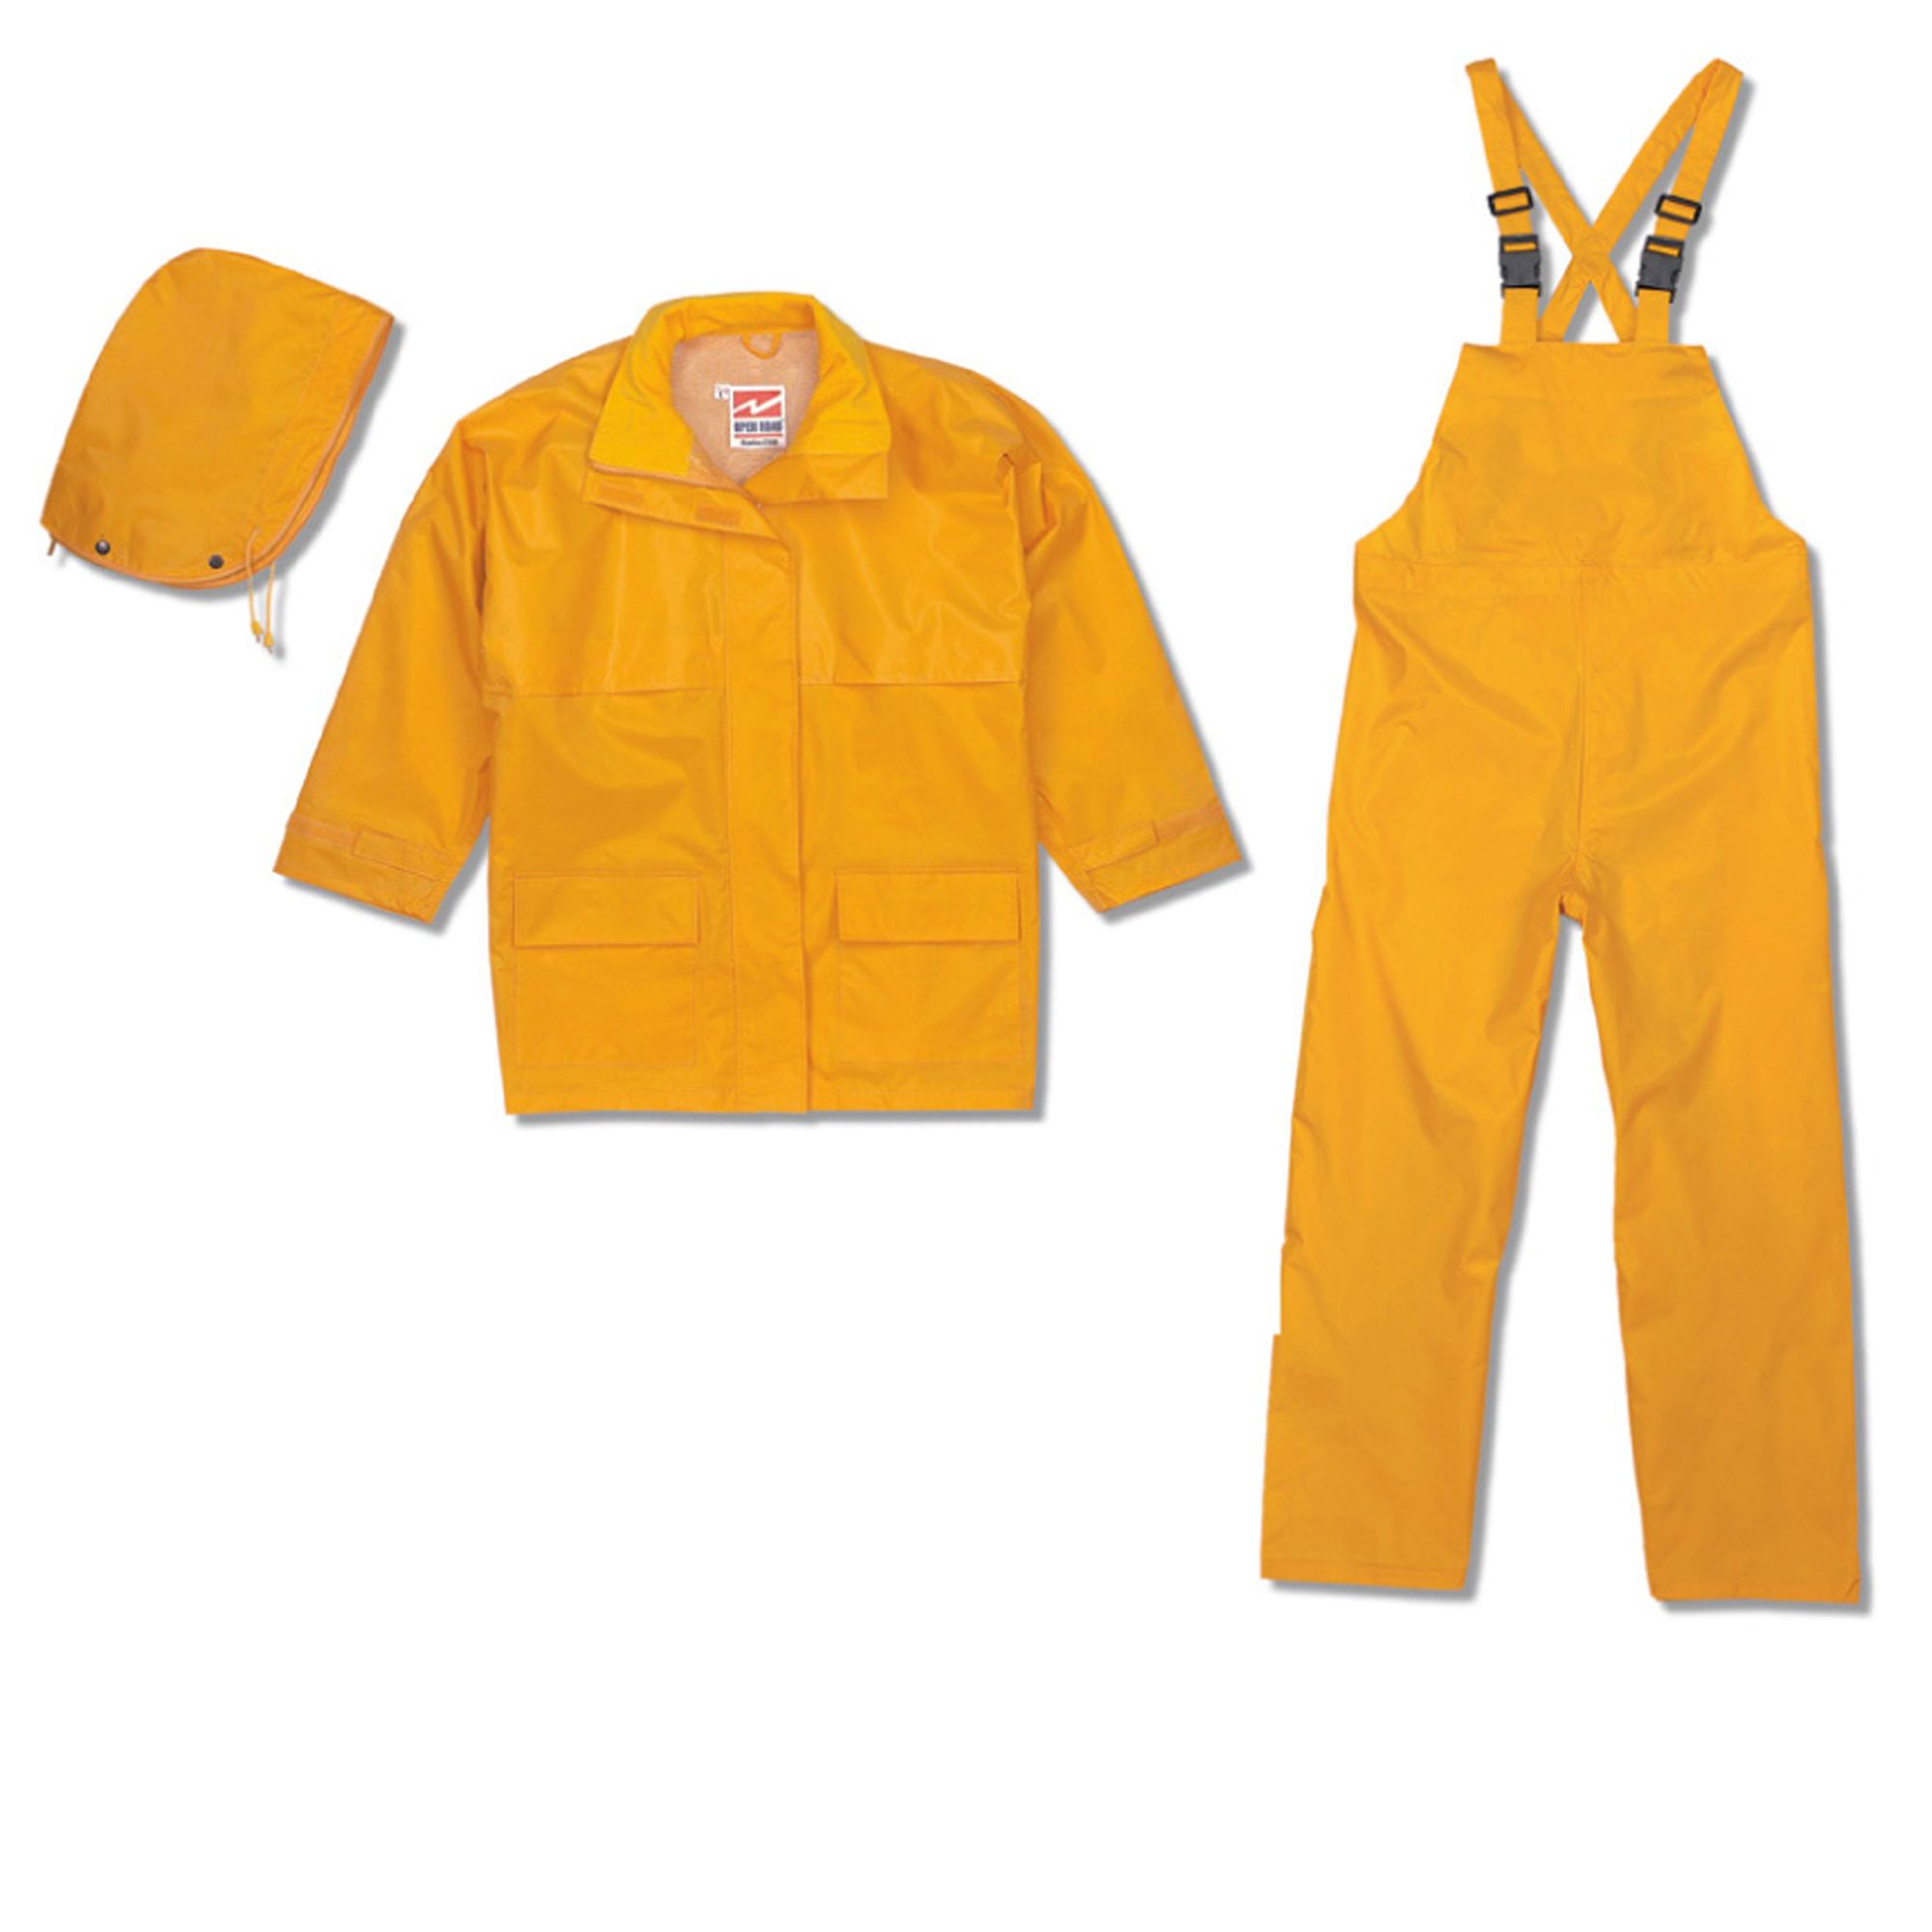 Yellow Rain Suit, Large, 2-Piece